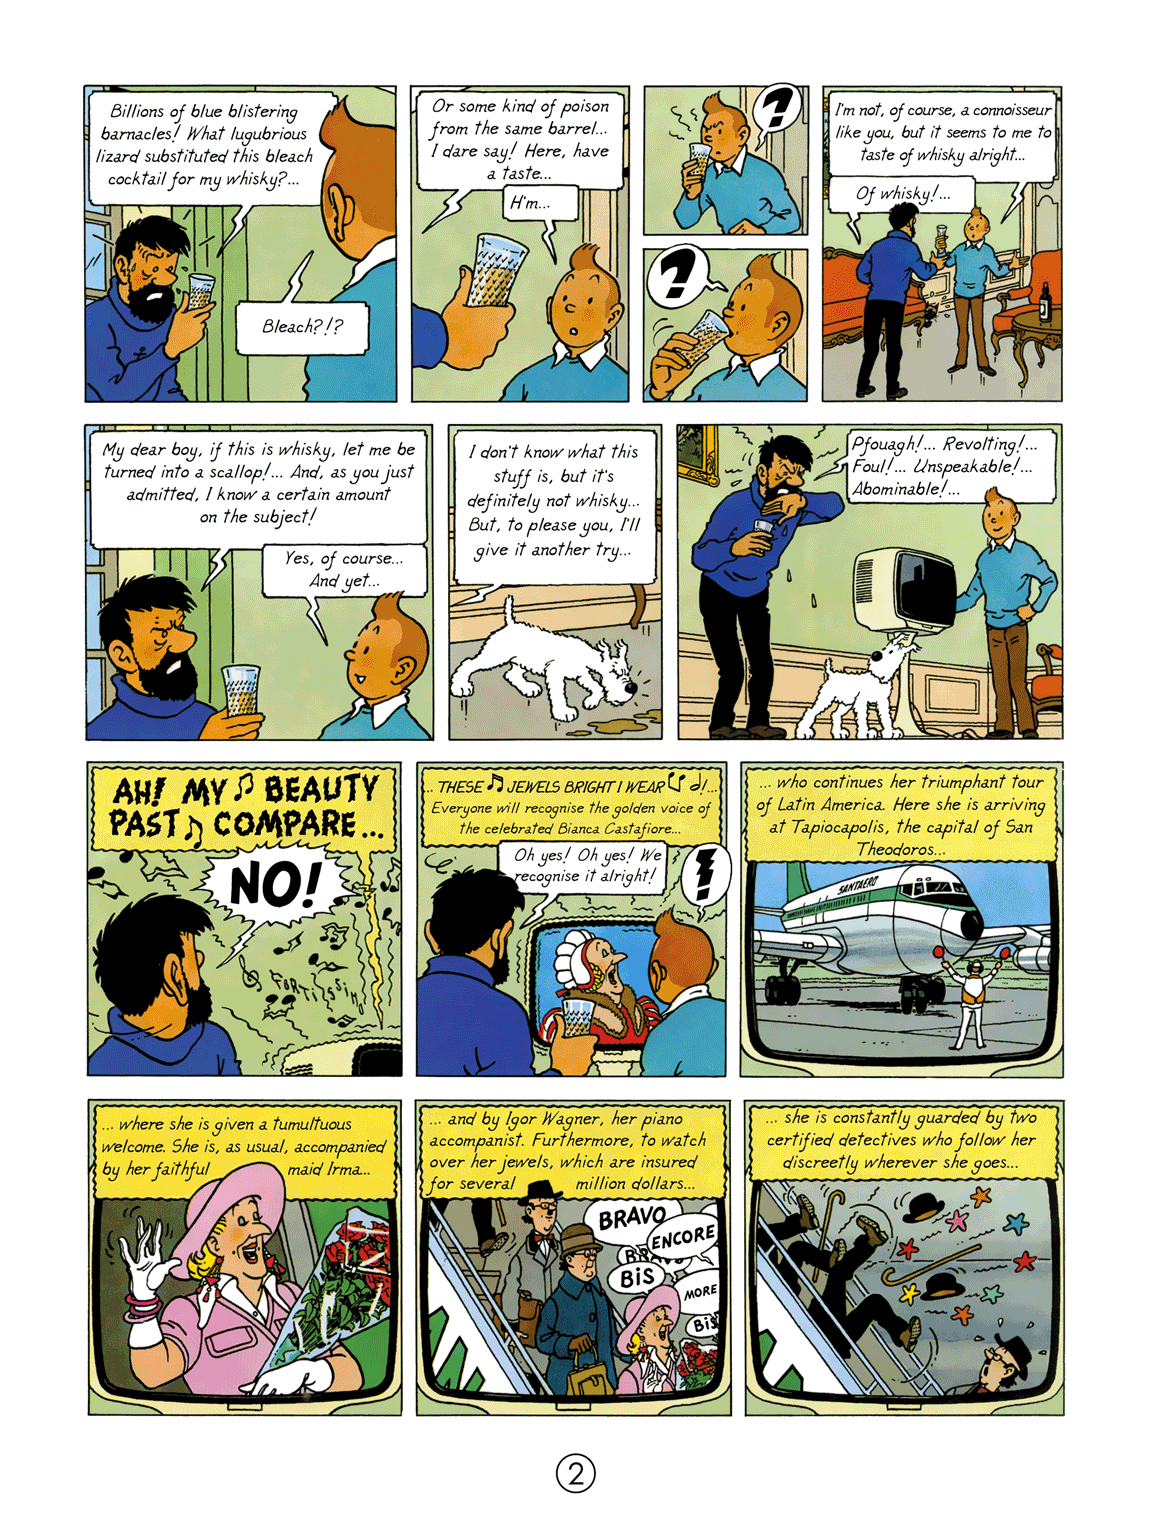 ENGLISH ALBUM: #23 - Tintin and the Picaros